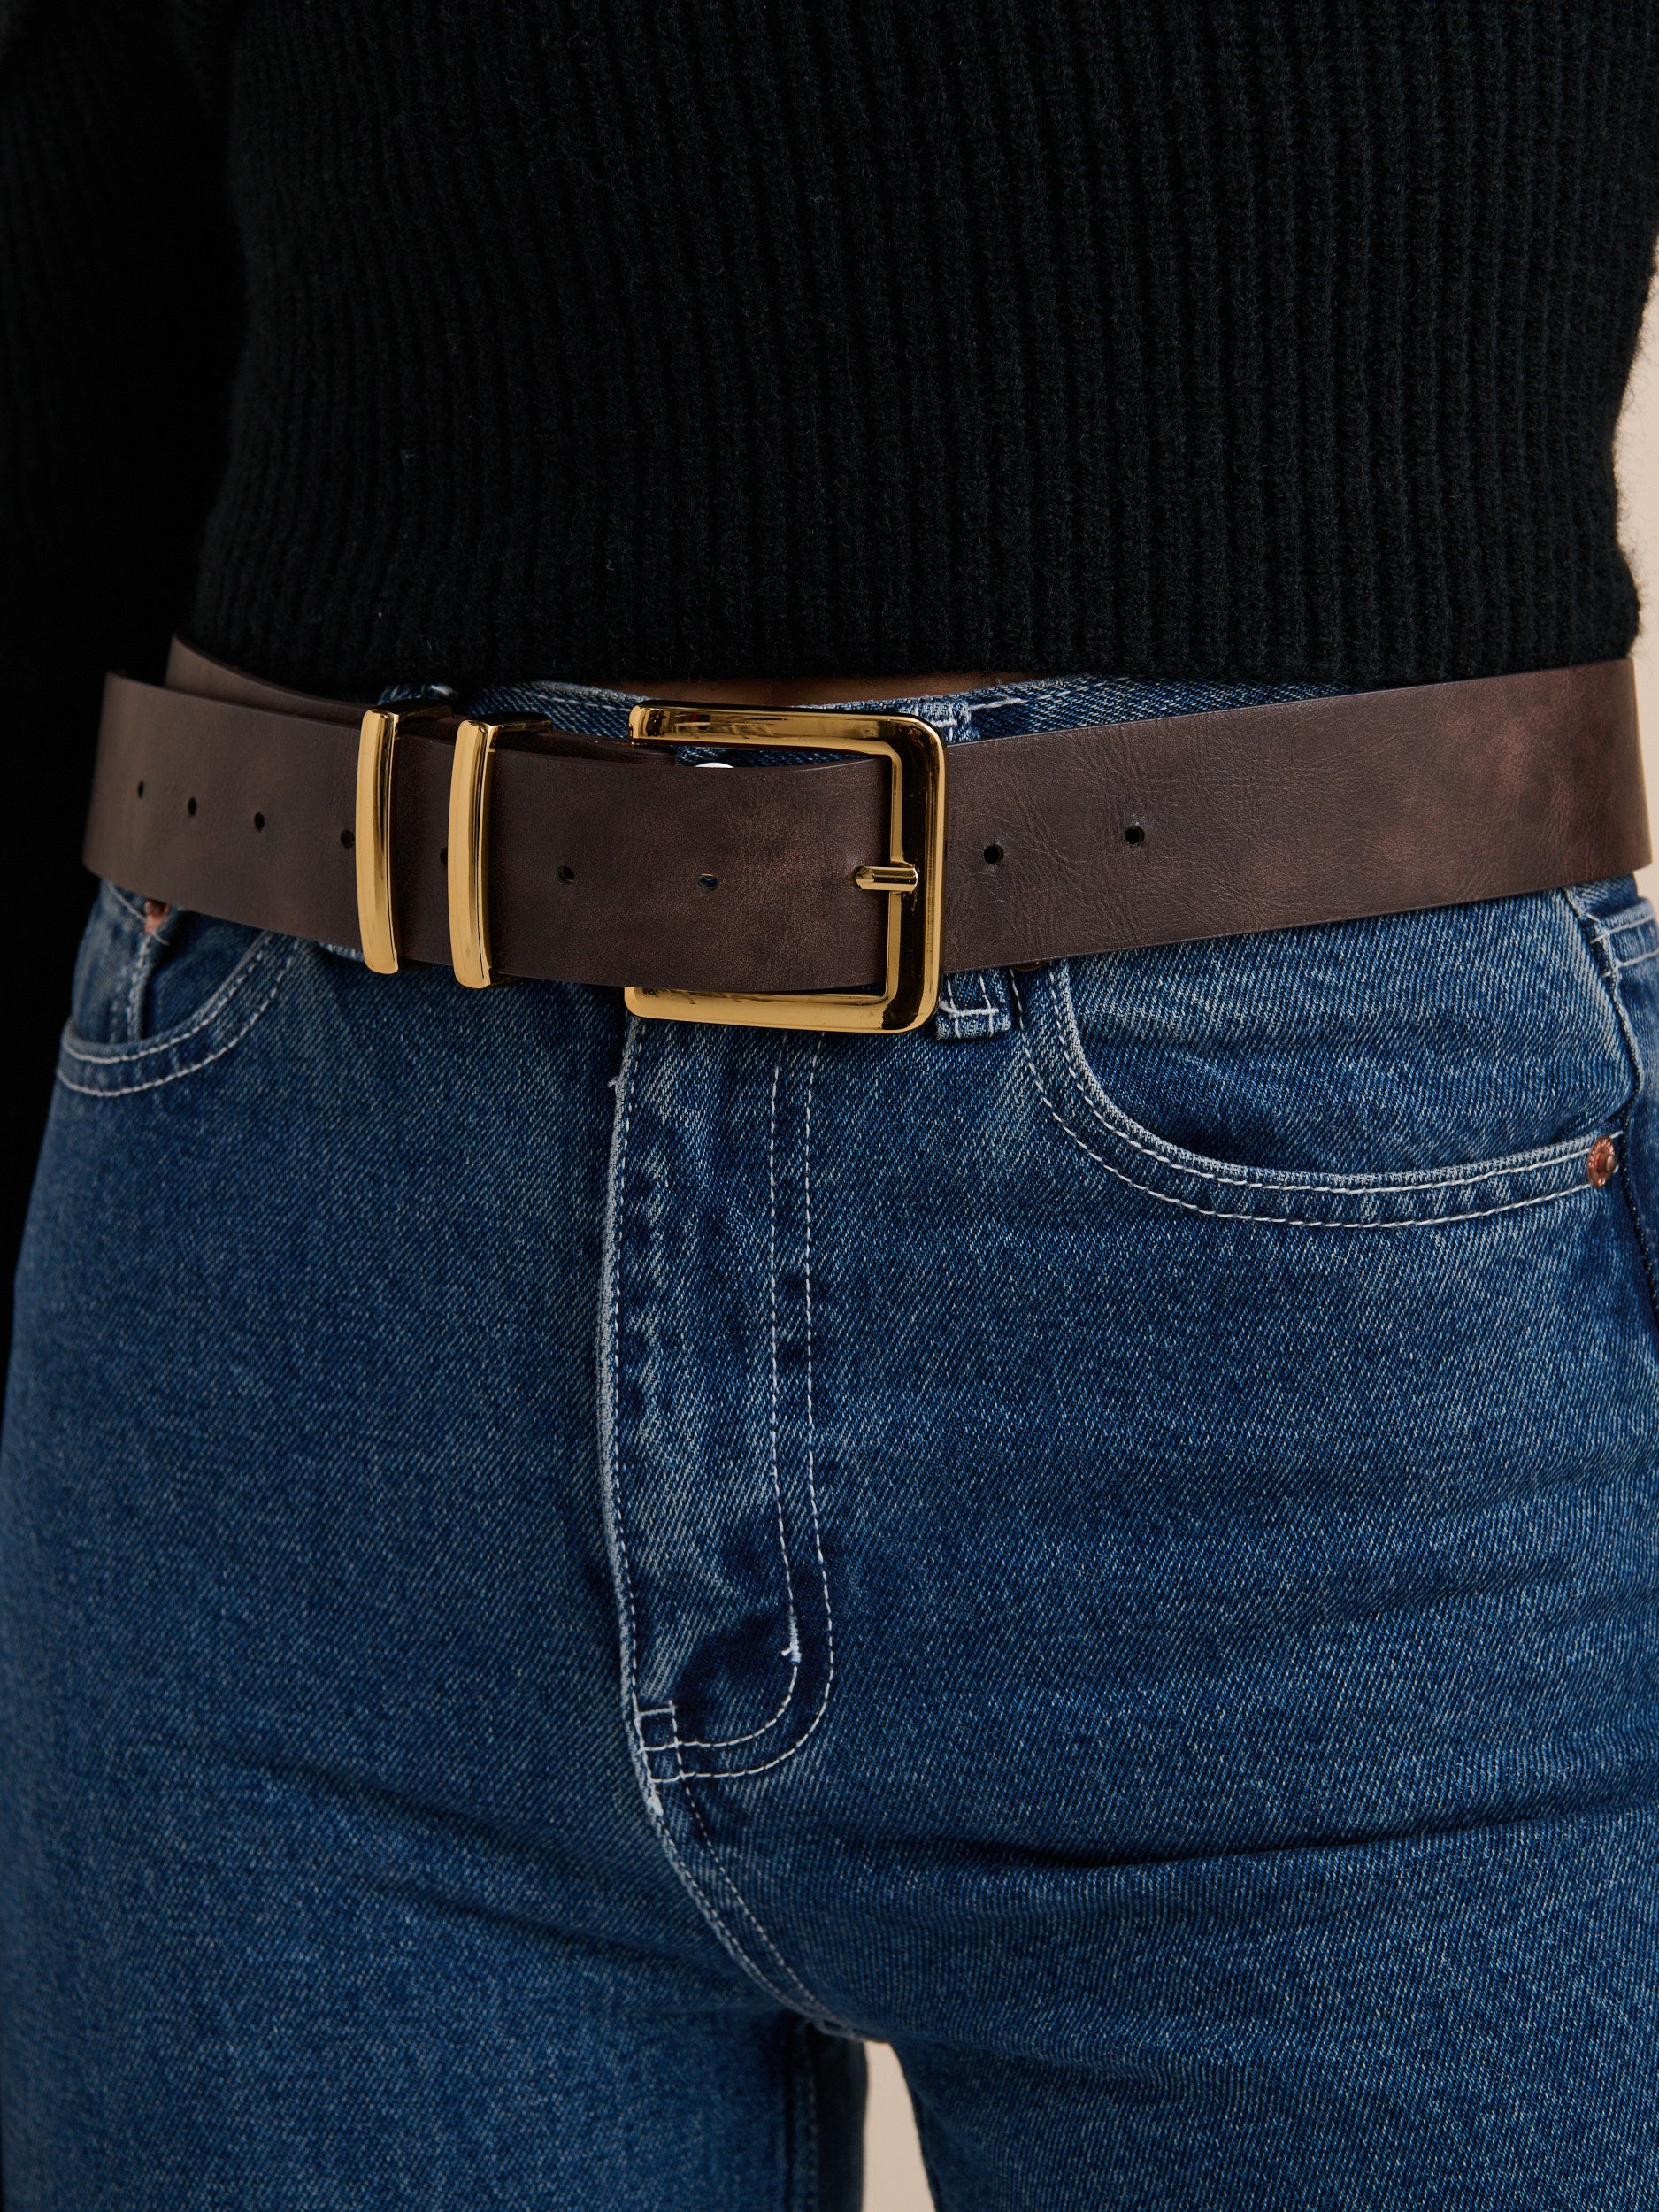 Western Vintage PU Leather Belt in Brown